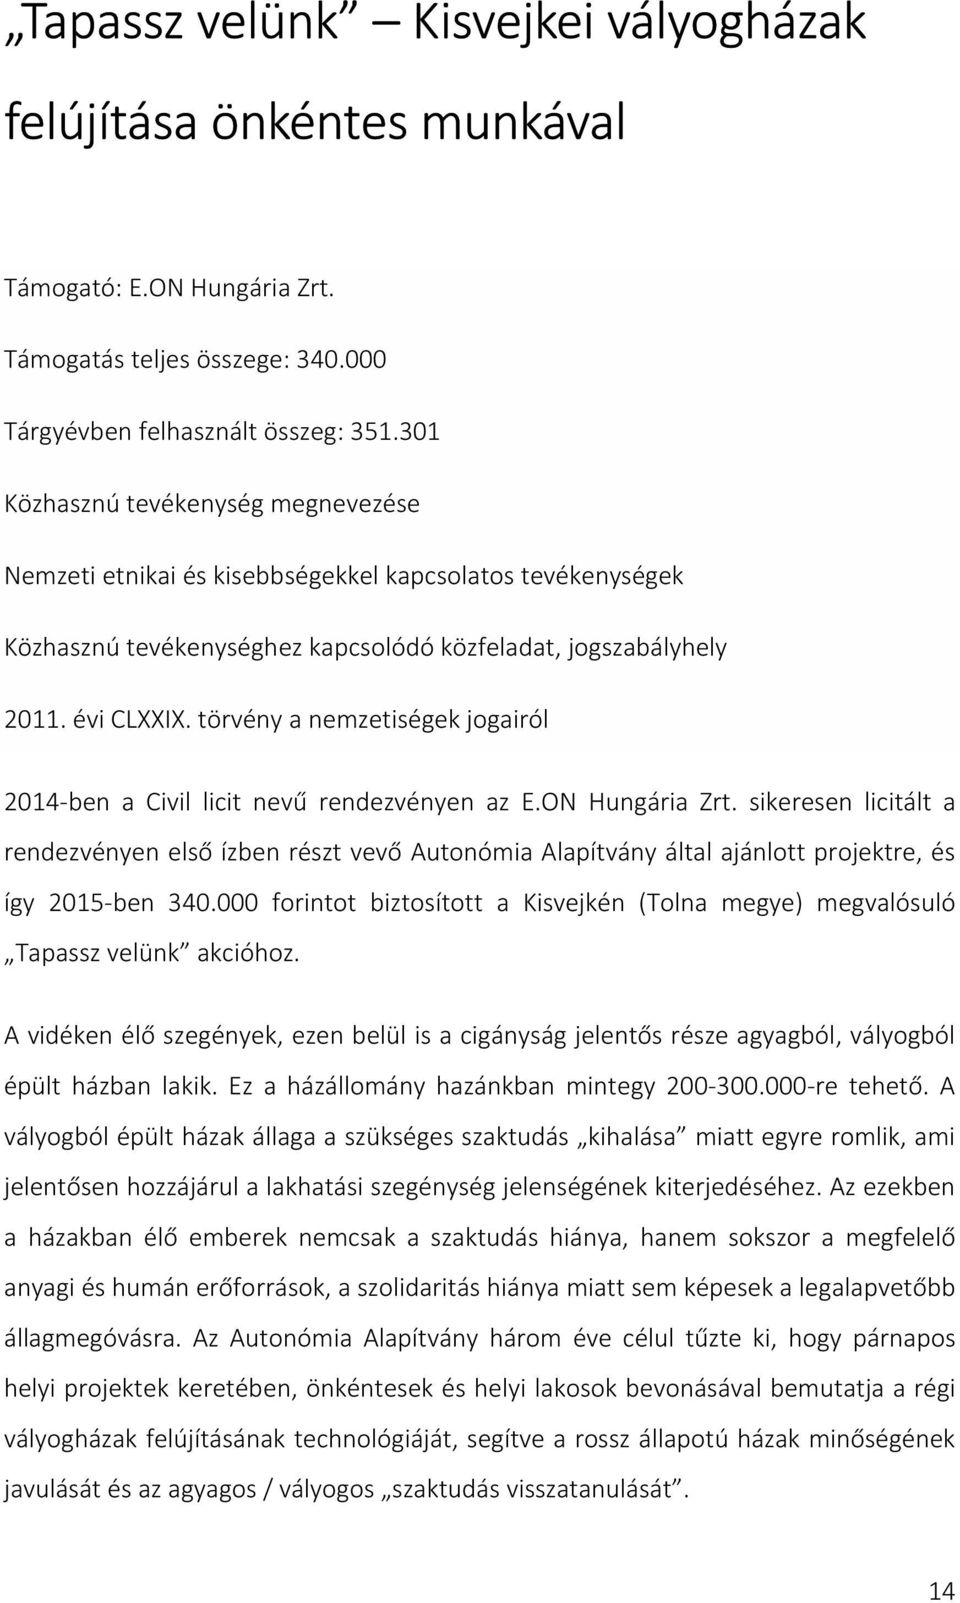 törvény a nemzetiségek jogairól 2014-ben a Civil licit nevű rendezvényen az E.ON Hungária Zrt.